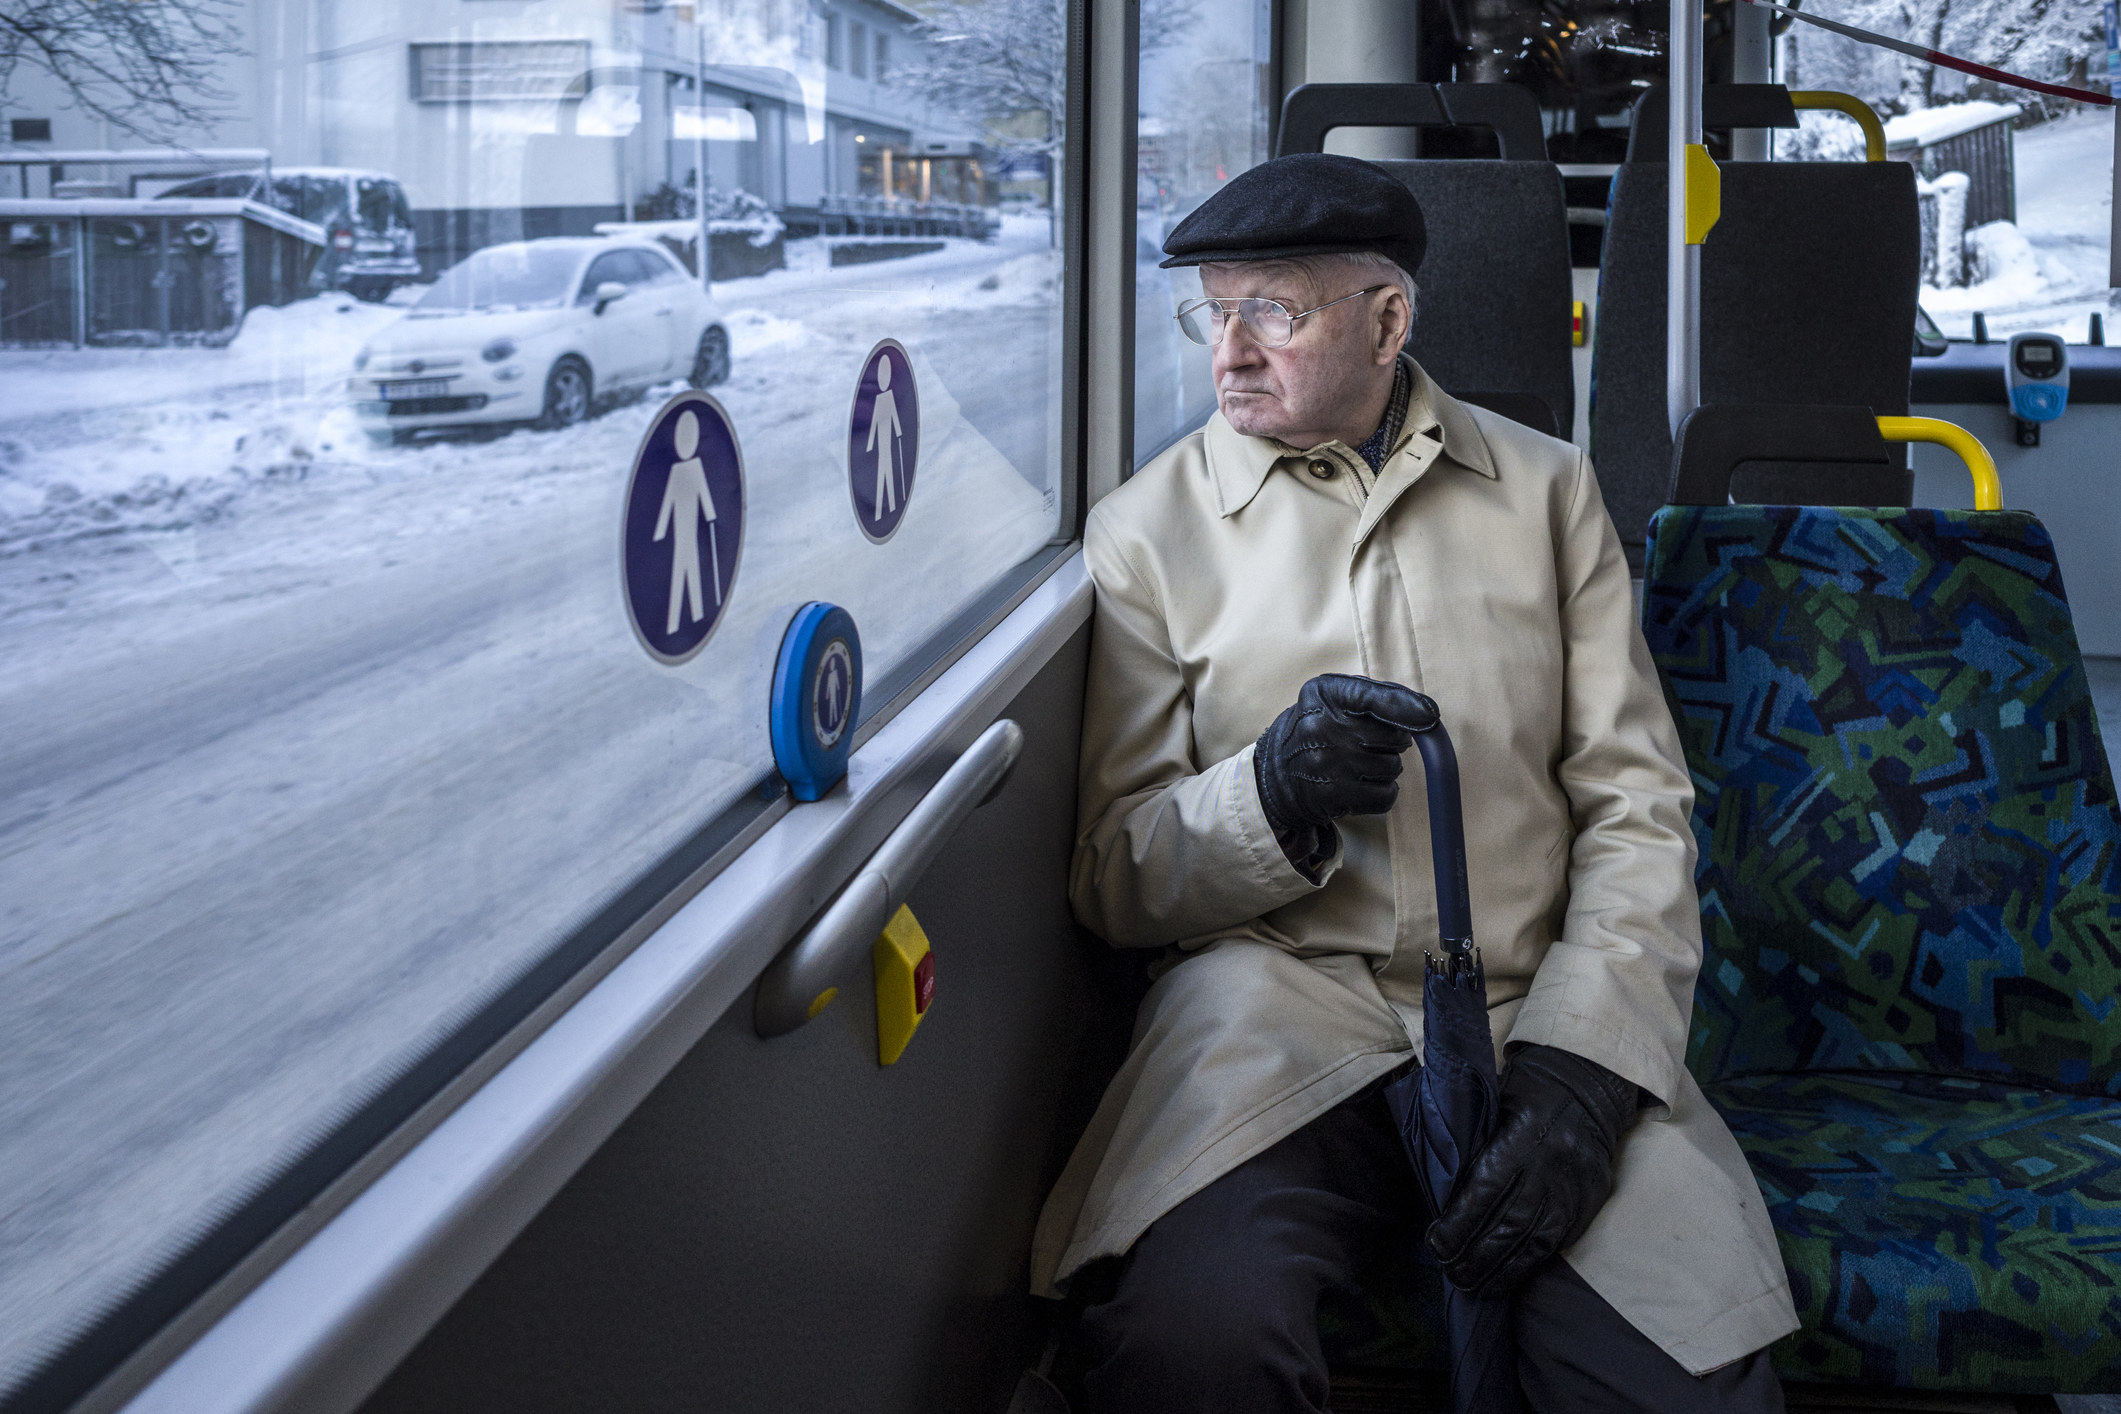 An elderly man sitting on a bus.